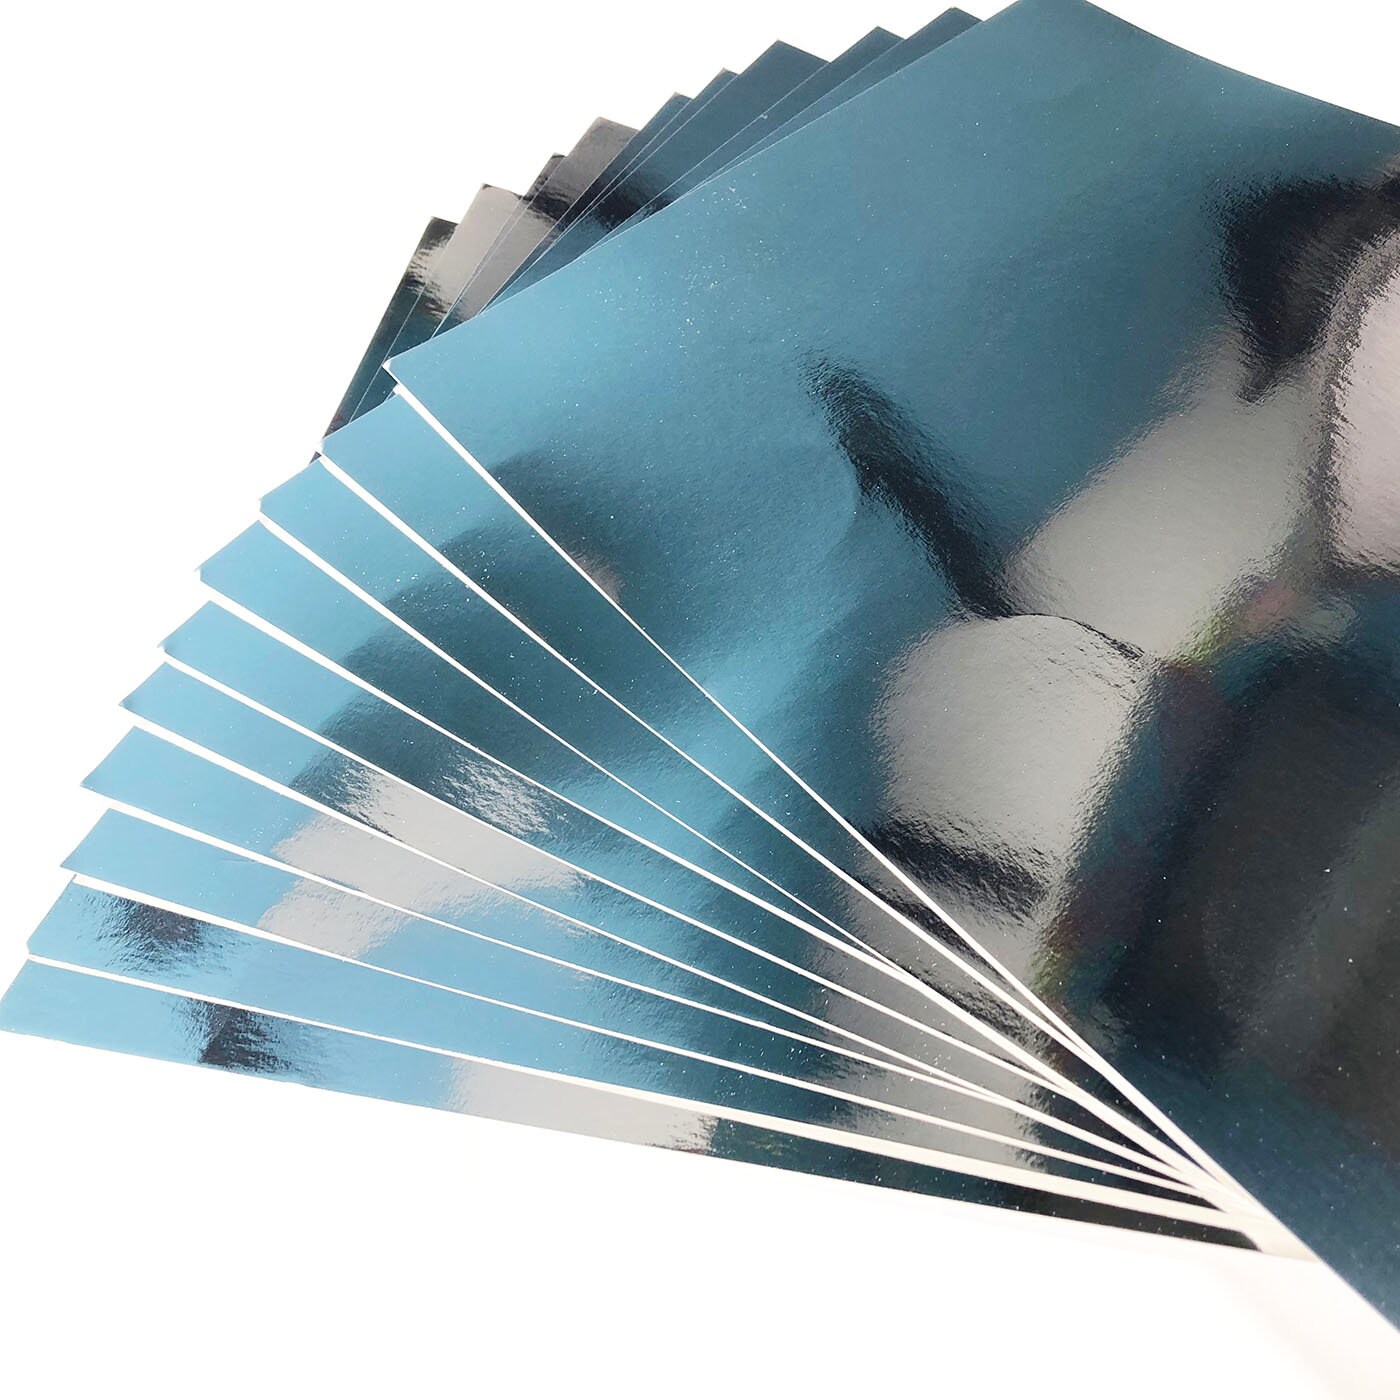 Metallic Foil Card, A4, 210x297 mm, 280 g, silver, 10 sheet/ 1 pack